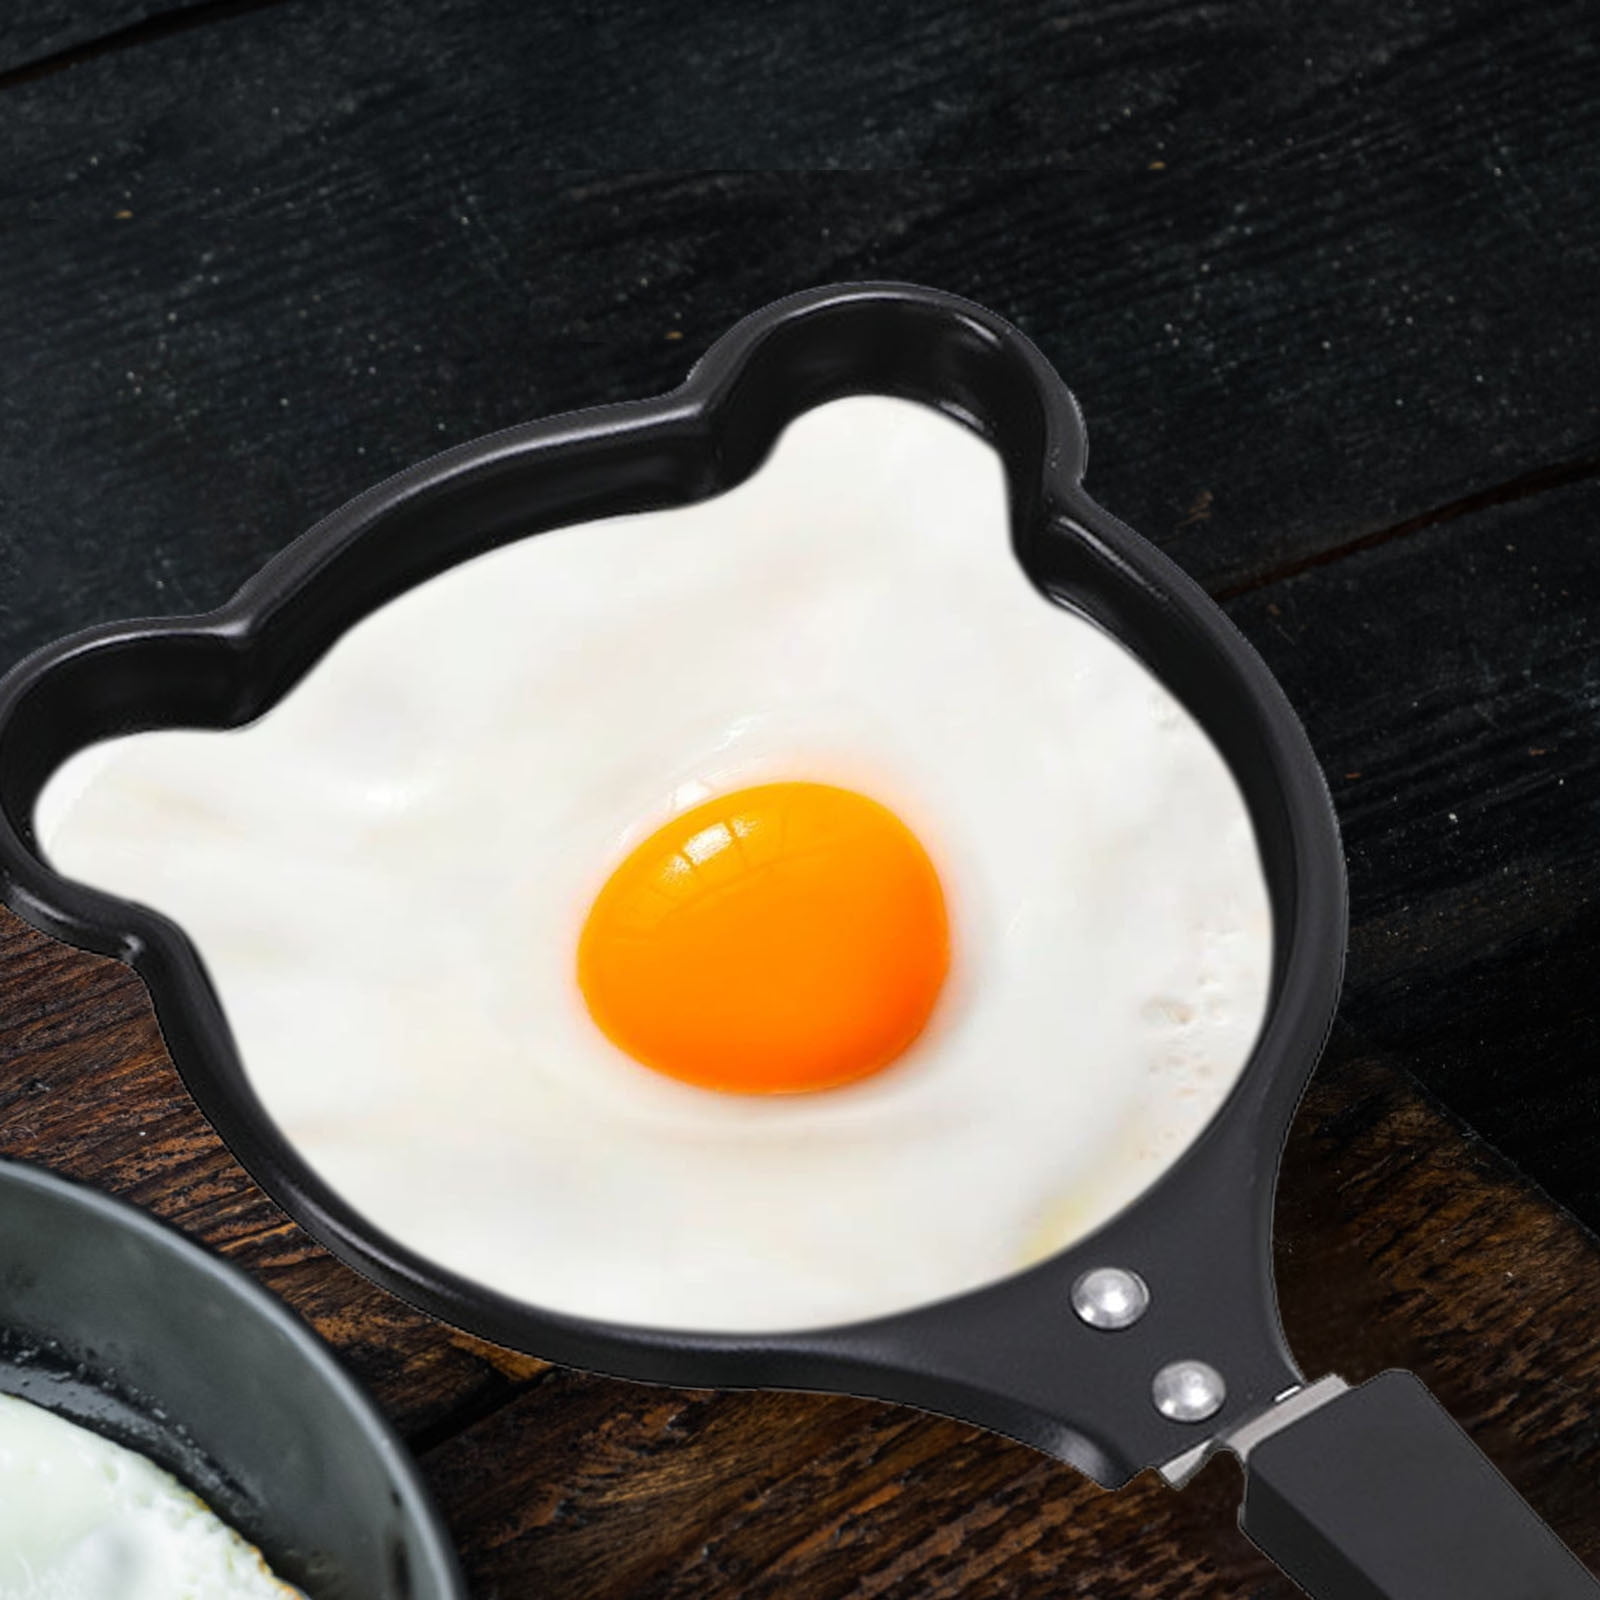 Creative Mini Omelette Pan, Handheld DIY Breakfast Omelette Mold, Pancake  Mold Maker, 7 Styles, Non-stick Coating, for Fried Eggs and Making Pancake